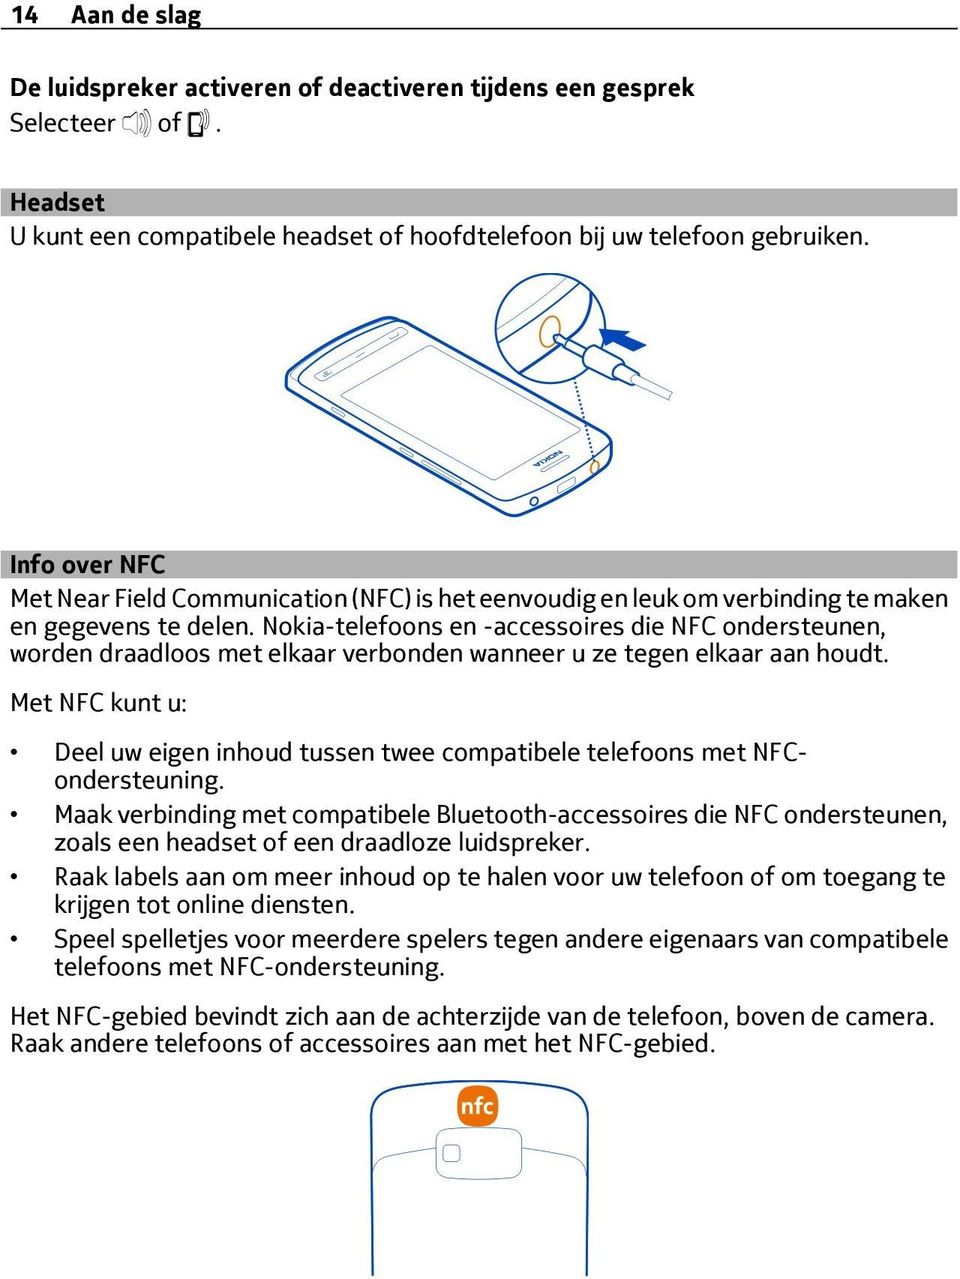 Nokia-telefoons en -accessoires die NFC ondersteunen, worden draadloos met elkaar verbonden wanneer u ze tegen elkaar aan houdt.